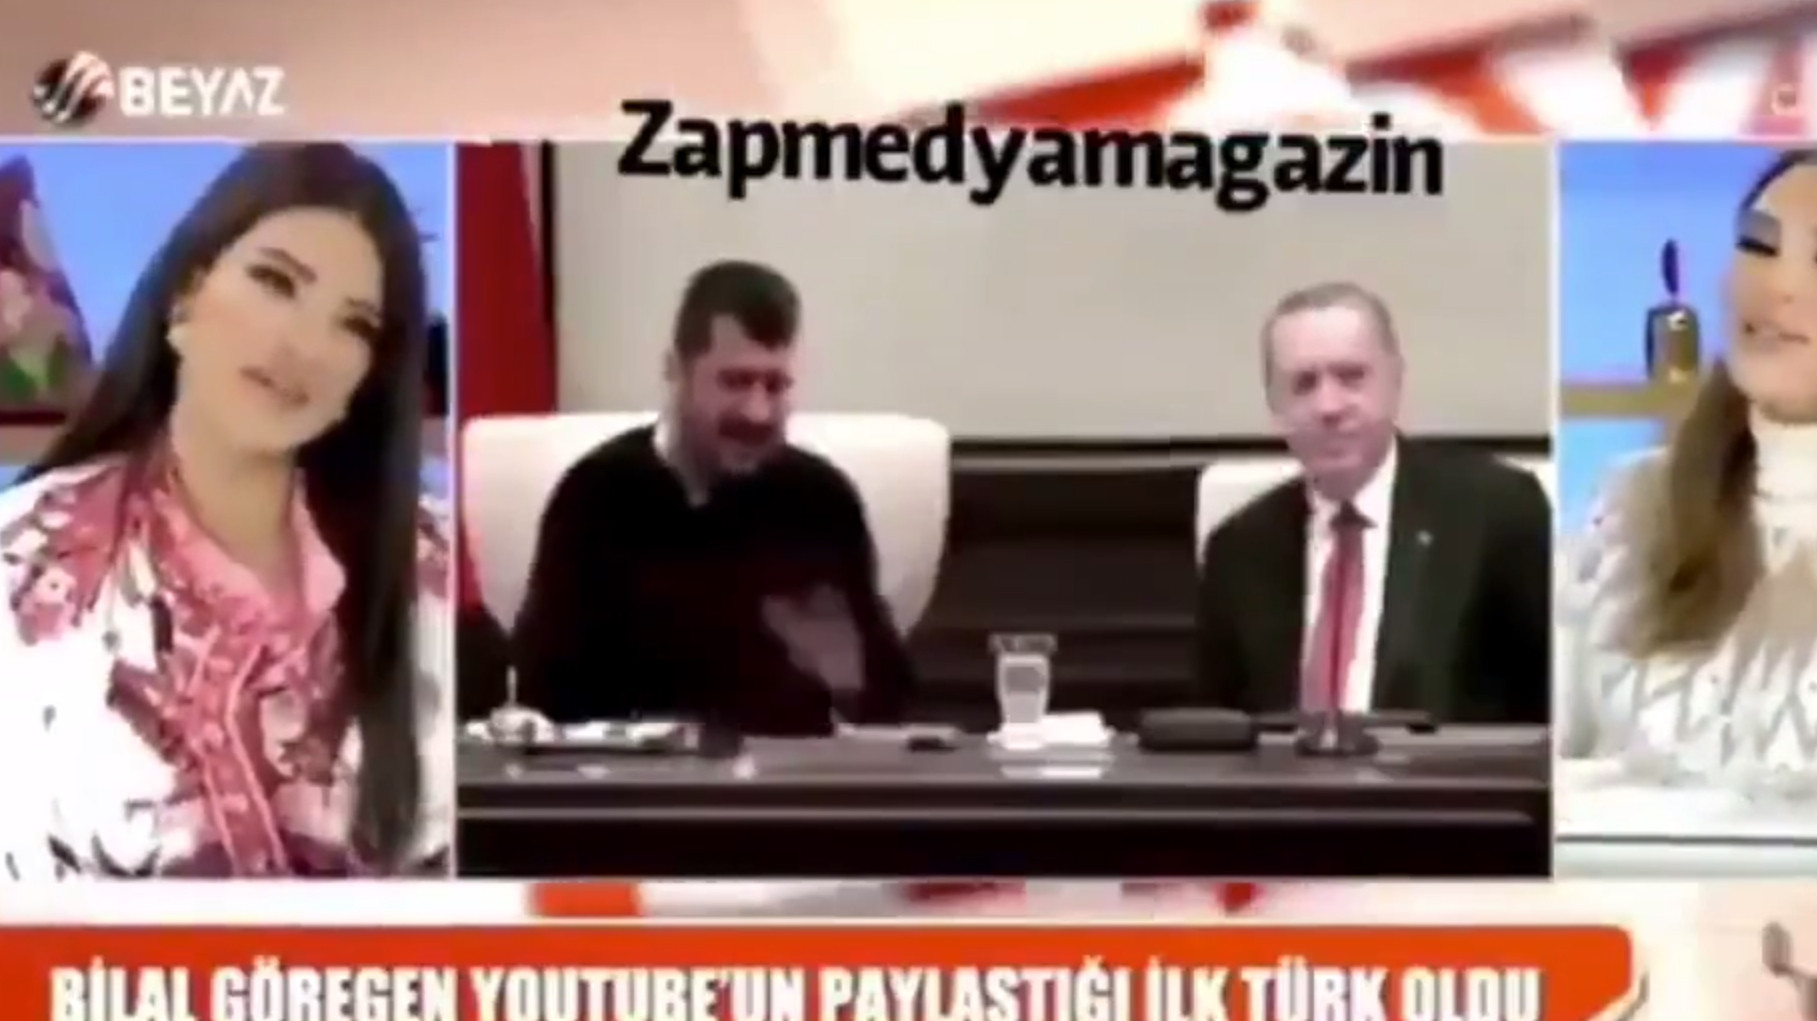 Seren Serengil ve Bircan Bali, Erdoğan montajını gerçek sanınca...